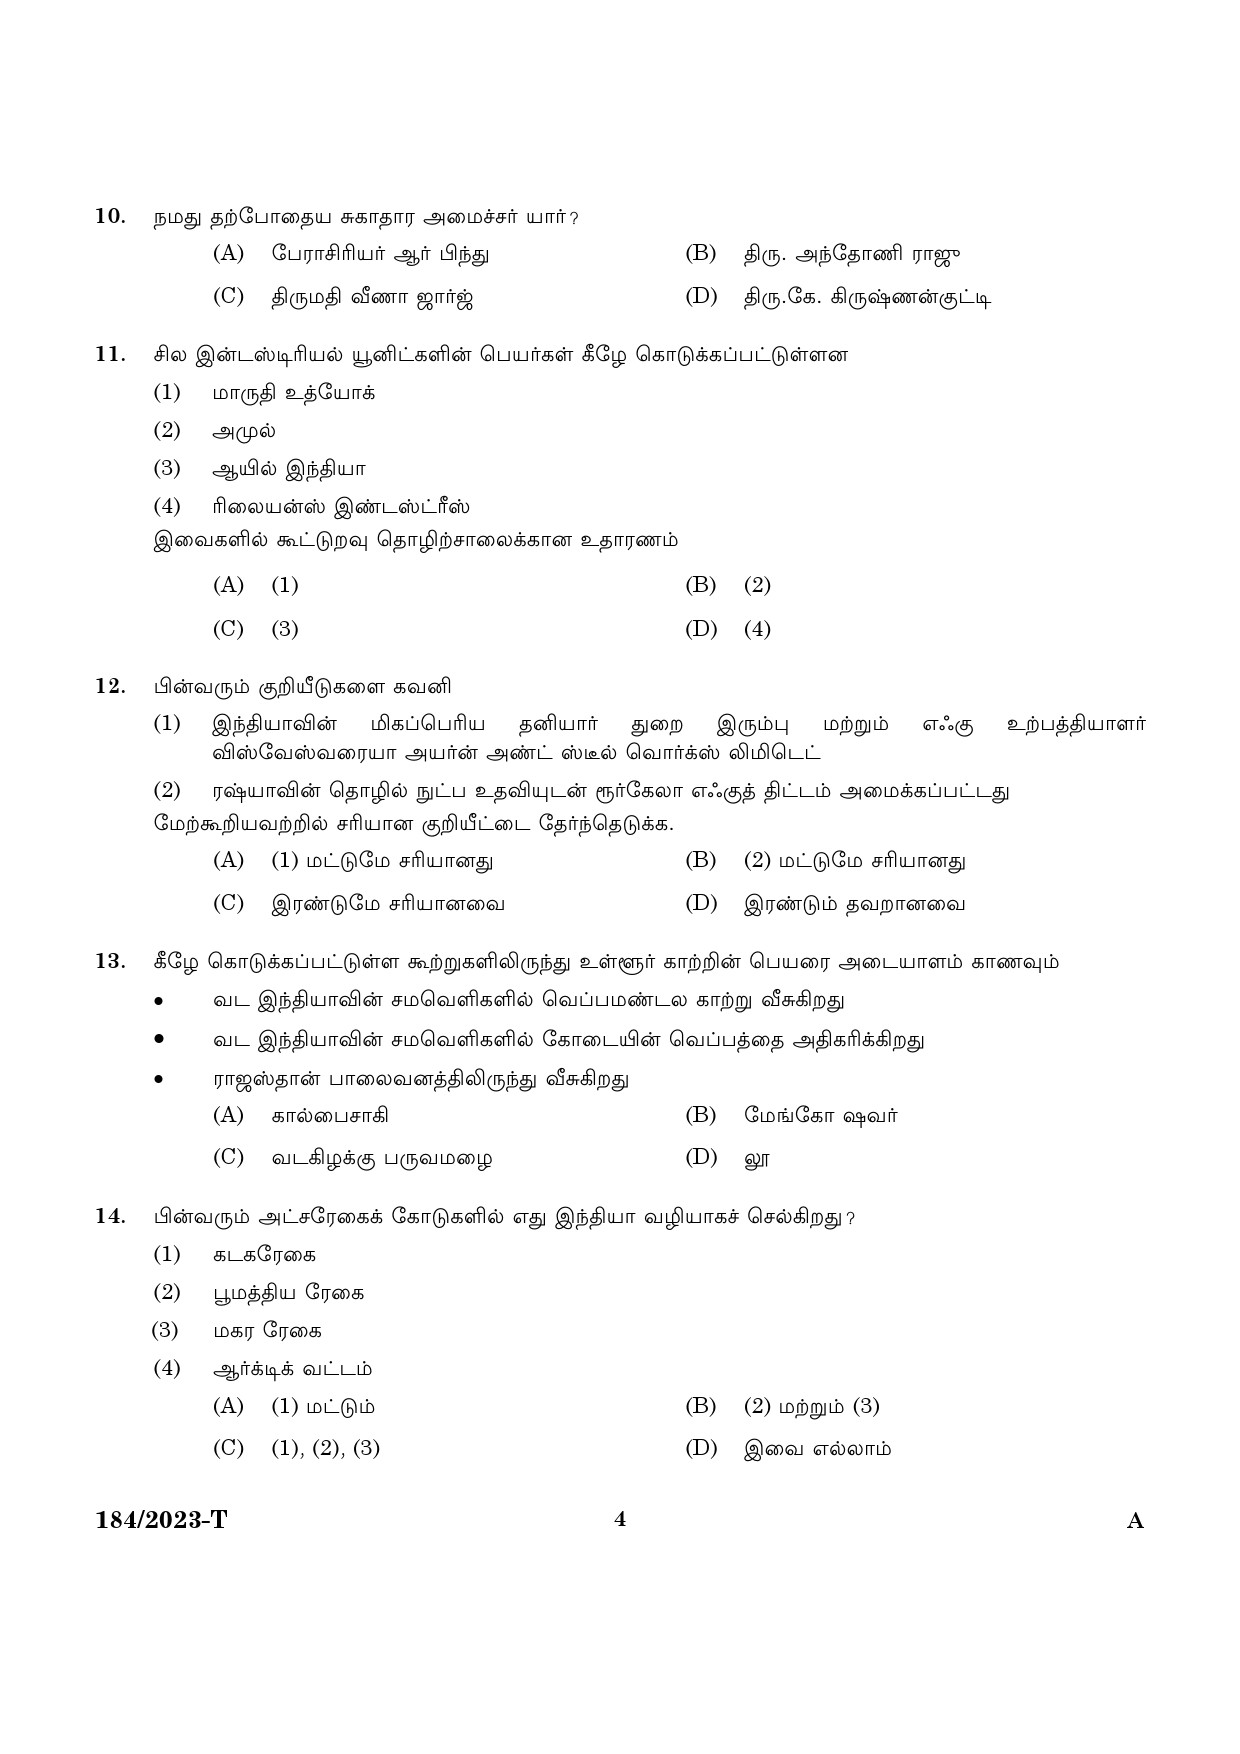 KPSC LGS Tamil Exam 2023 Code 1842023 T 2